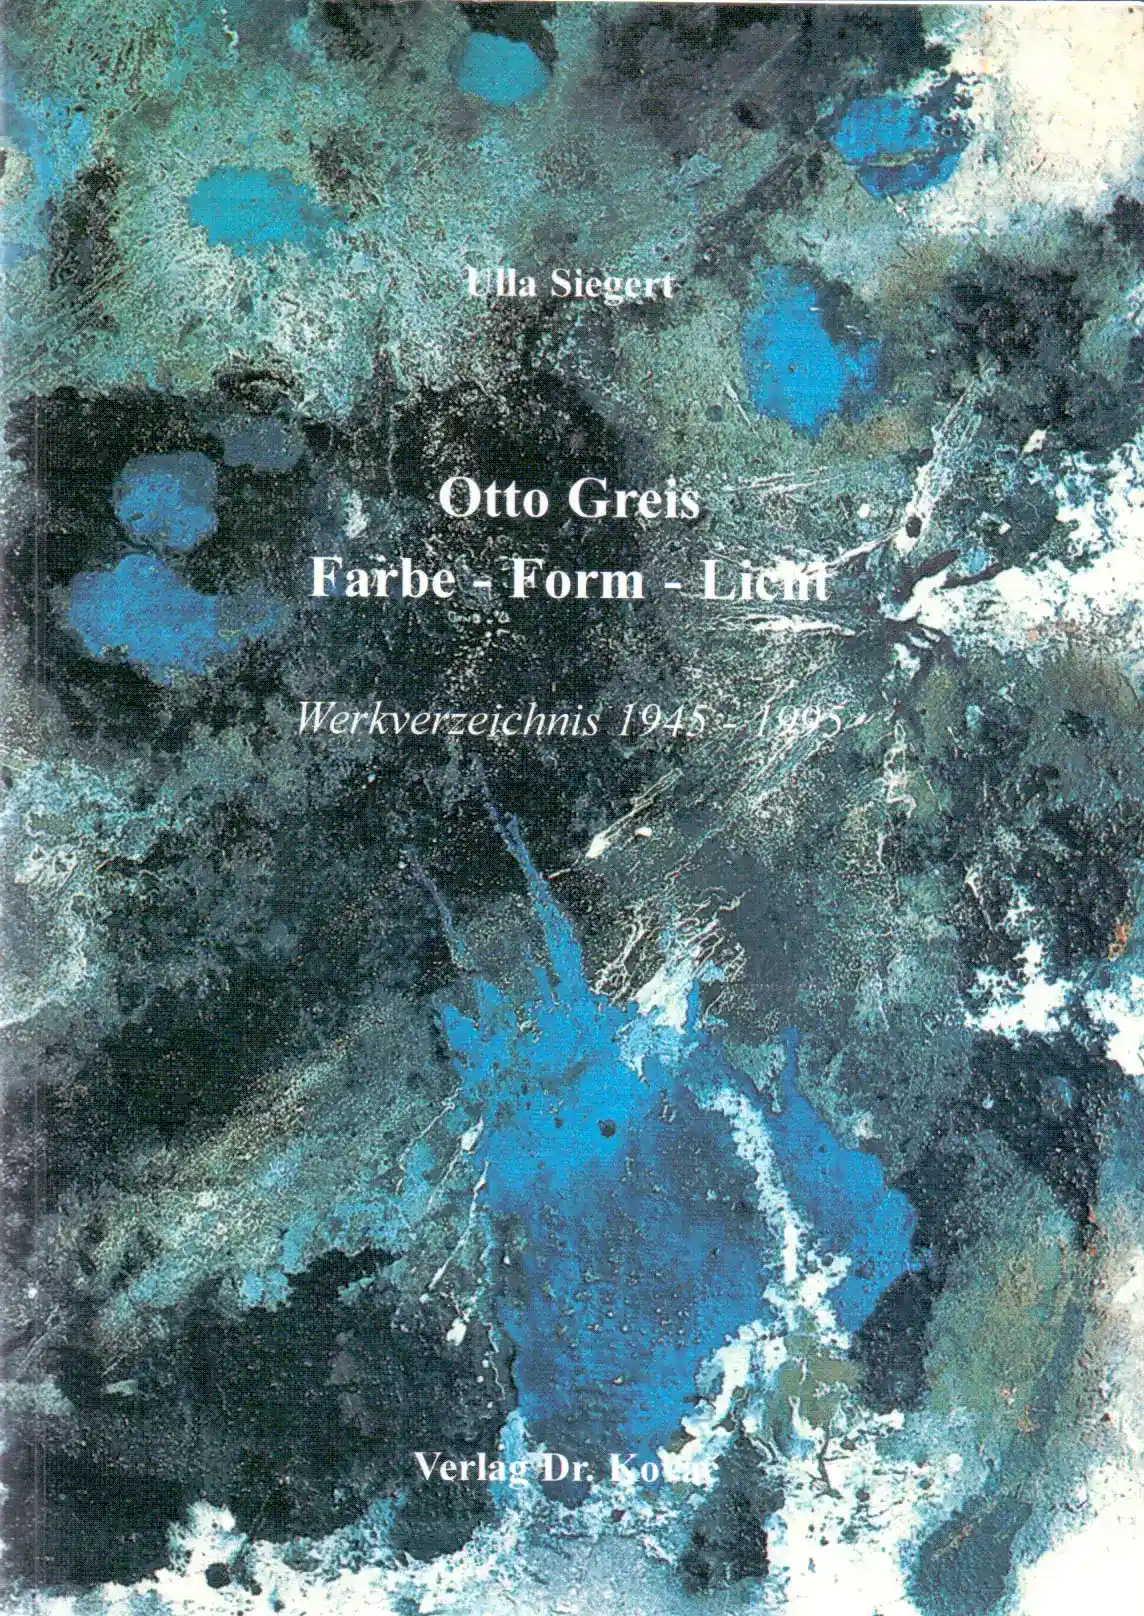 Otto Greis Farbe-Form-Licht (Forschungsarbeit)